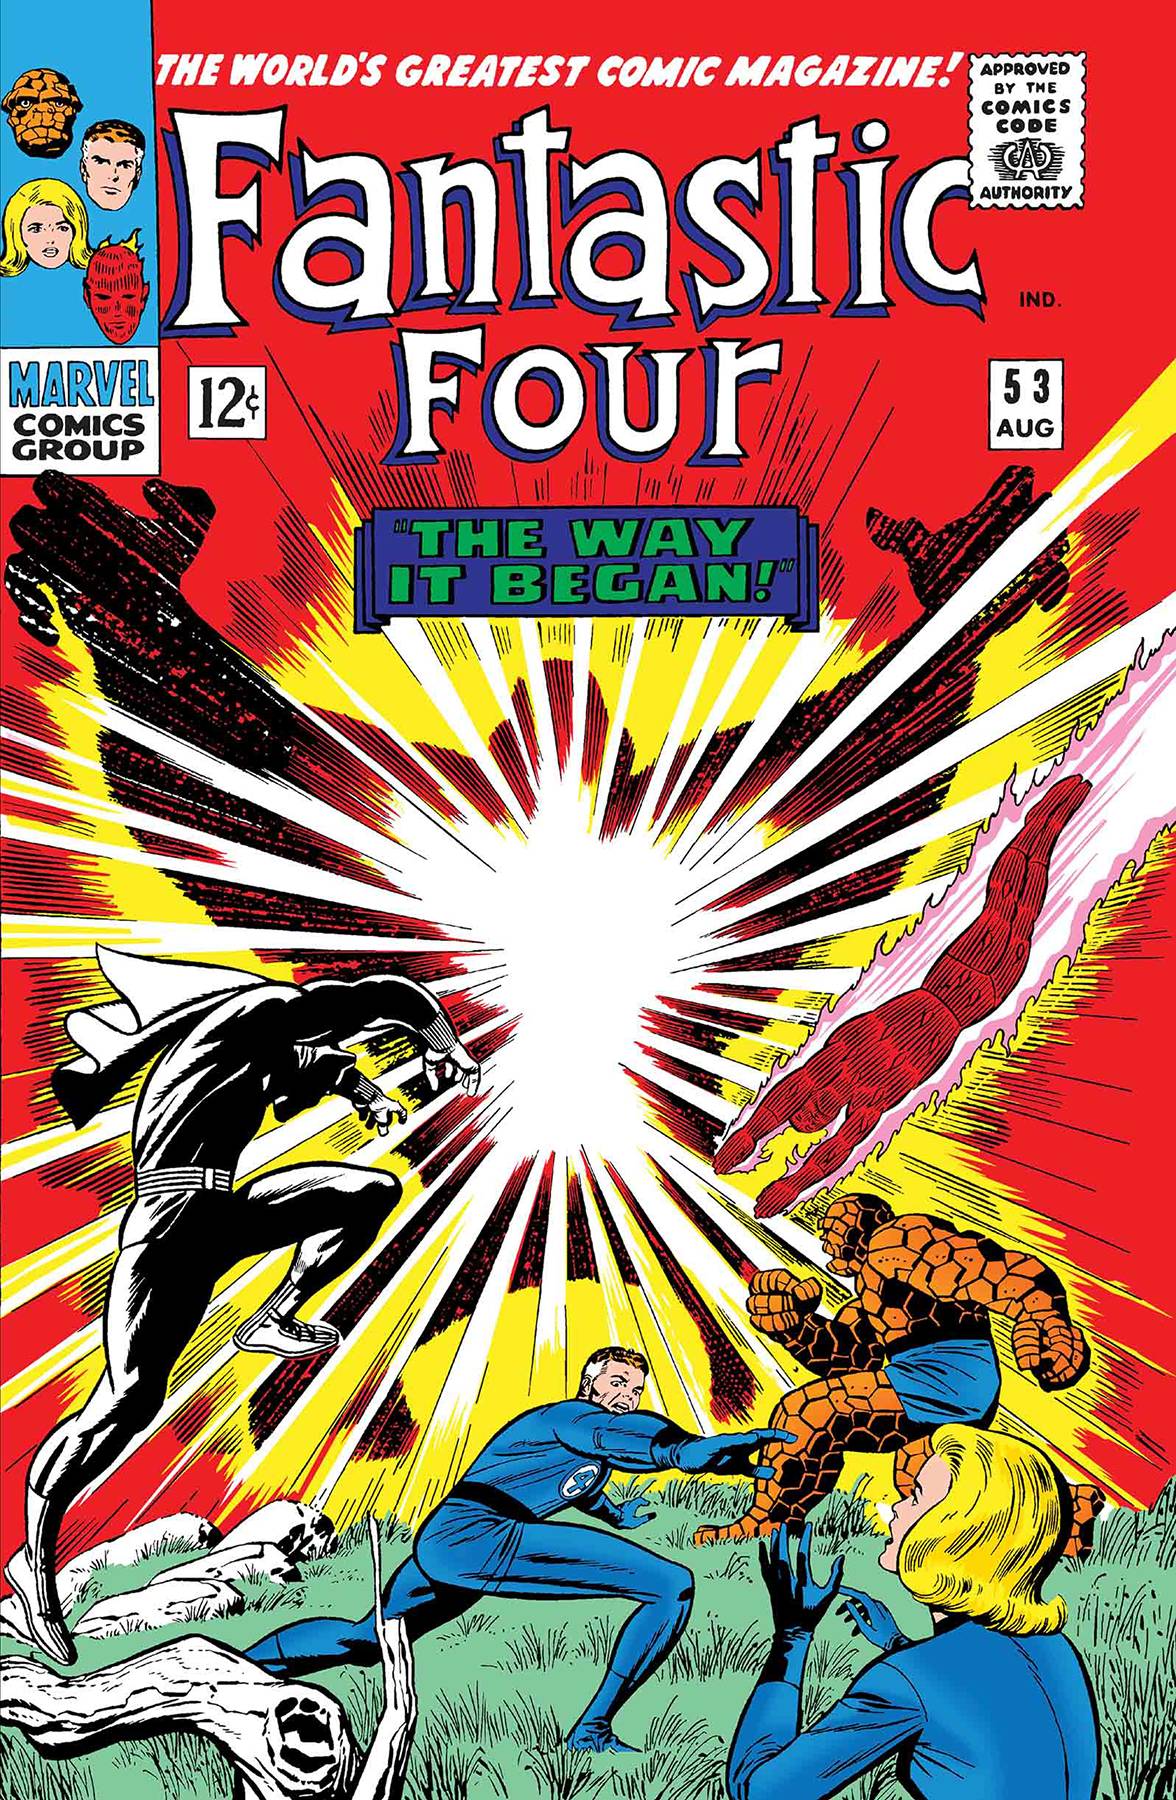 True Believers Fantastic Four Klaw #1